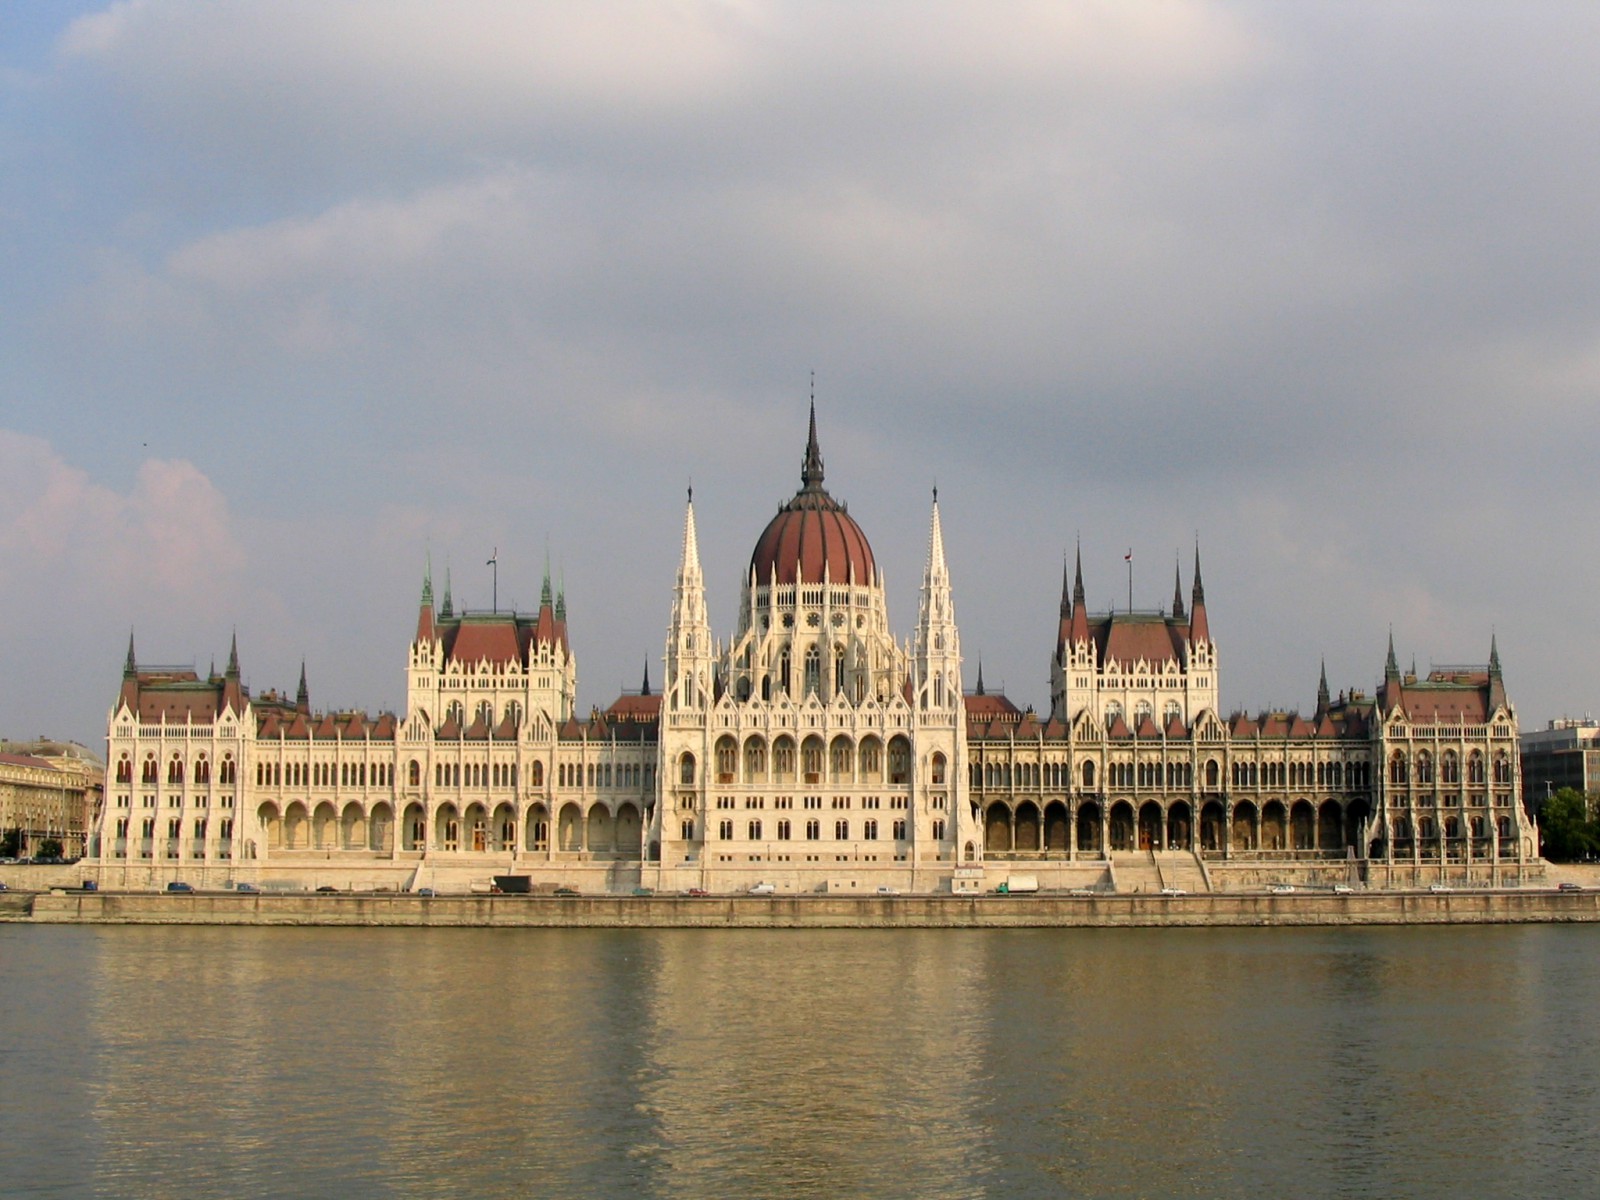 Здание Парламента